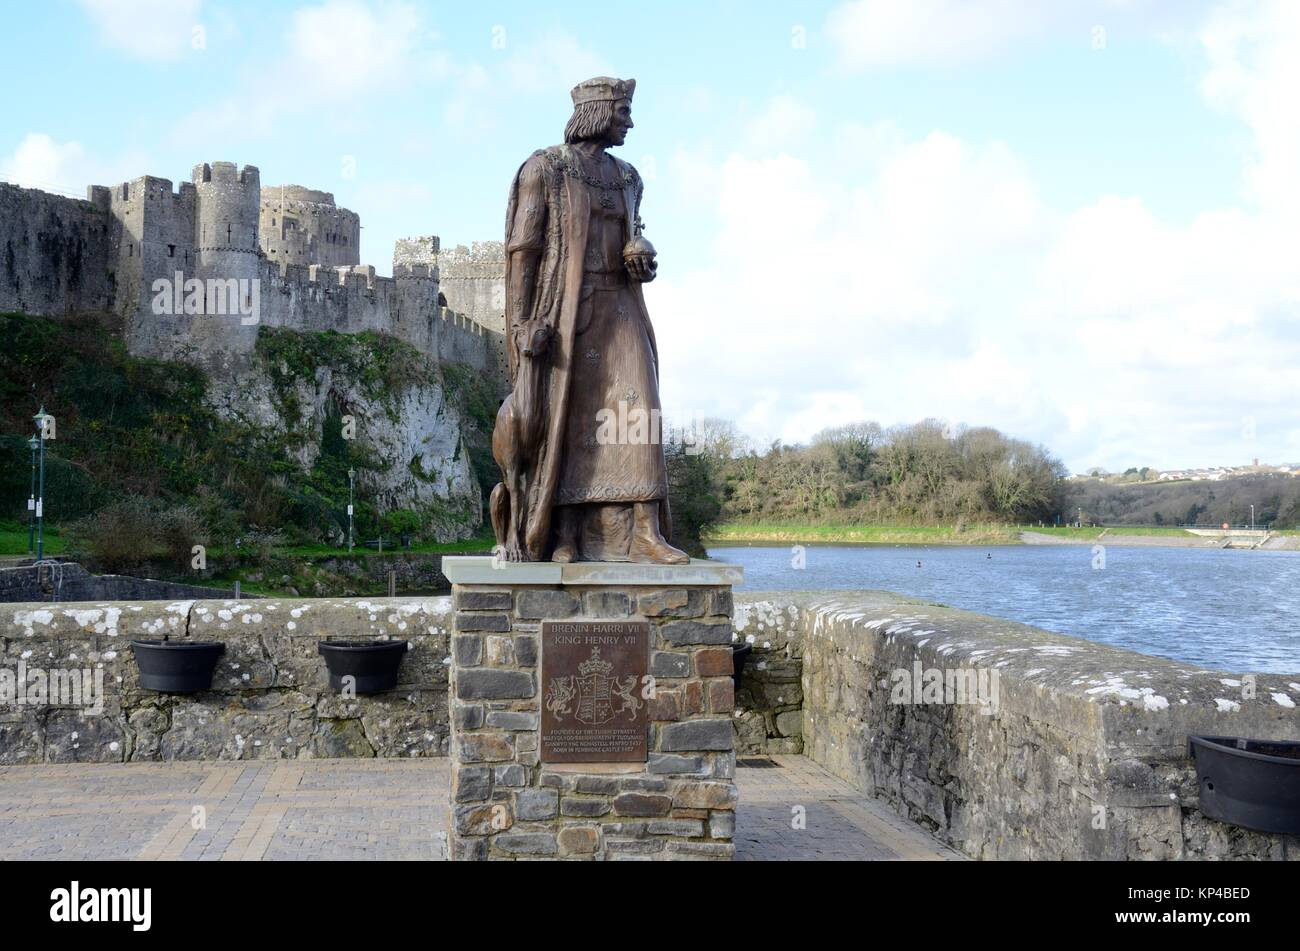 Statue pour commémorer le lieu de naissance de Henry V11 Henri Tudor Né à Pembroke Castle en 1457 Pays de Galles Cymru UK GO Banque D'Images